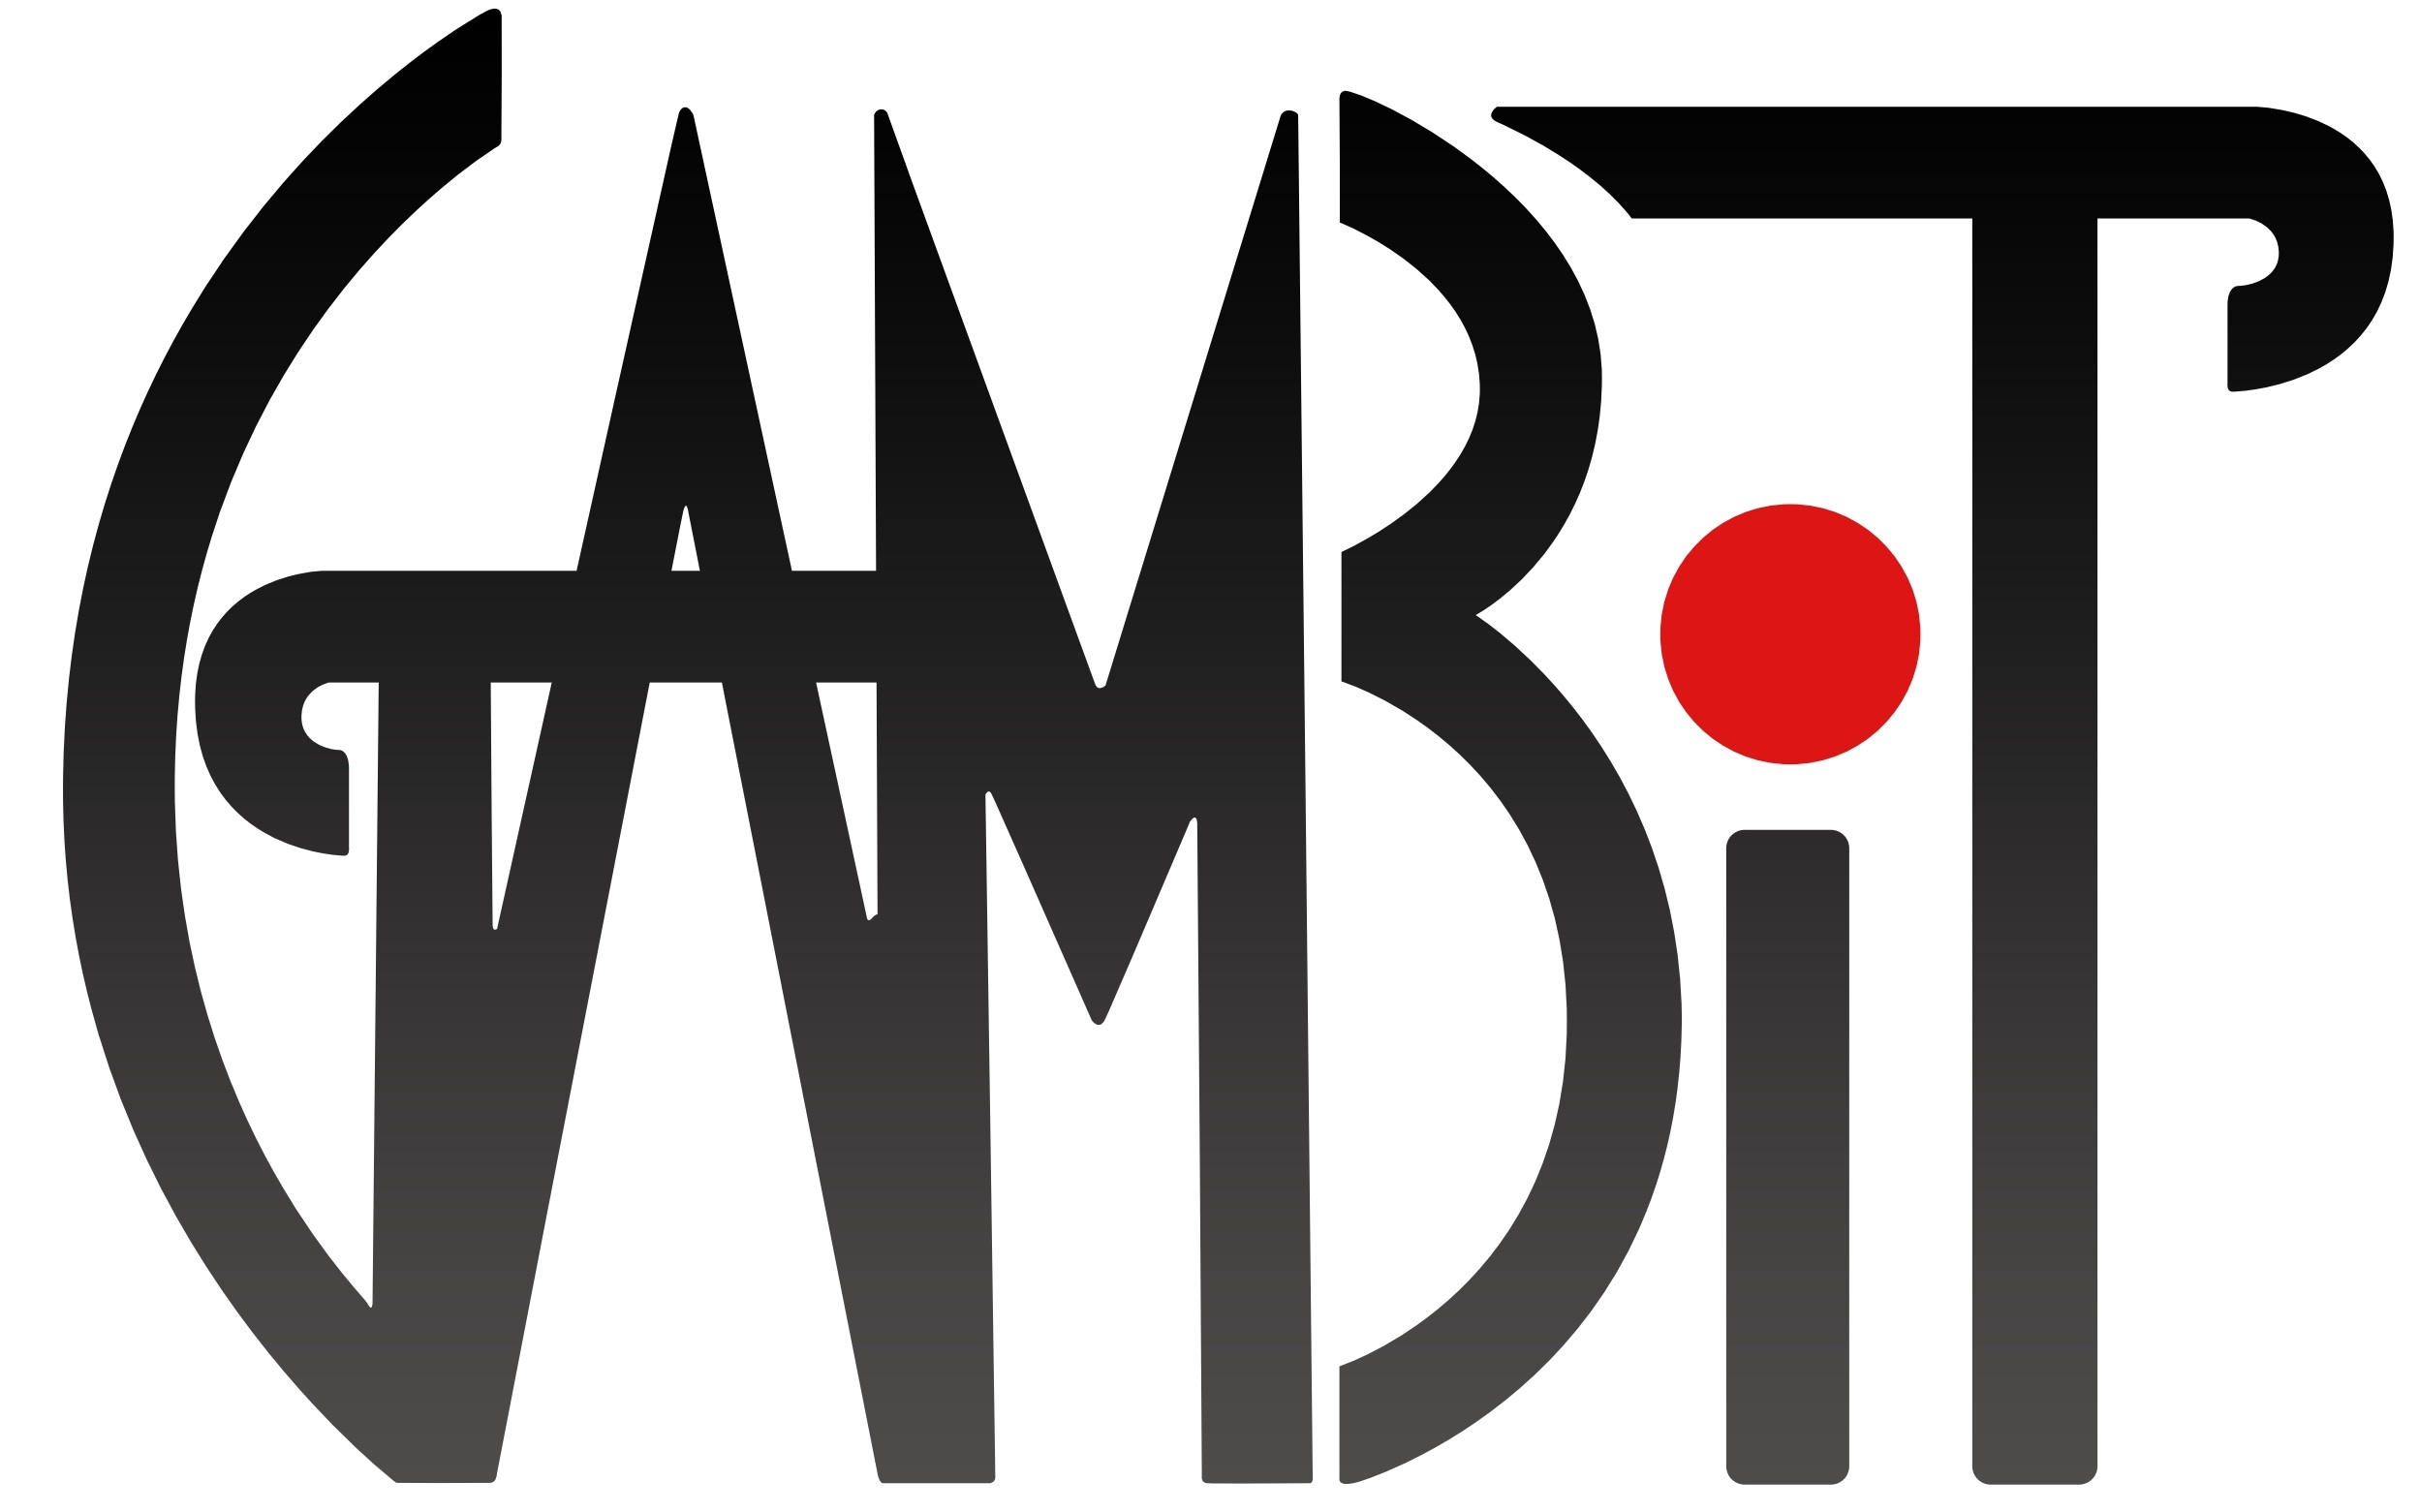 GAMBIT Logo.jpg 1c46a1f2ba6334112d1f32f8d9c7e979